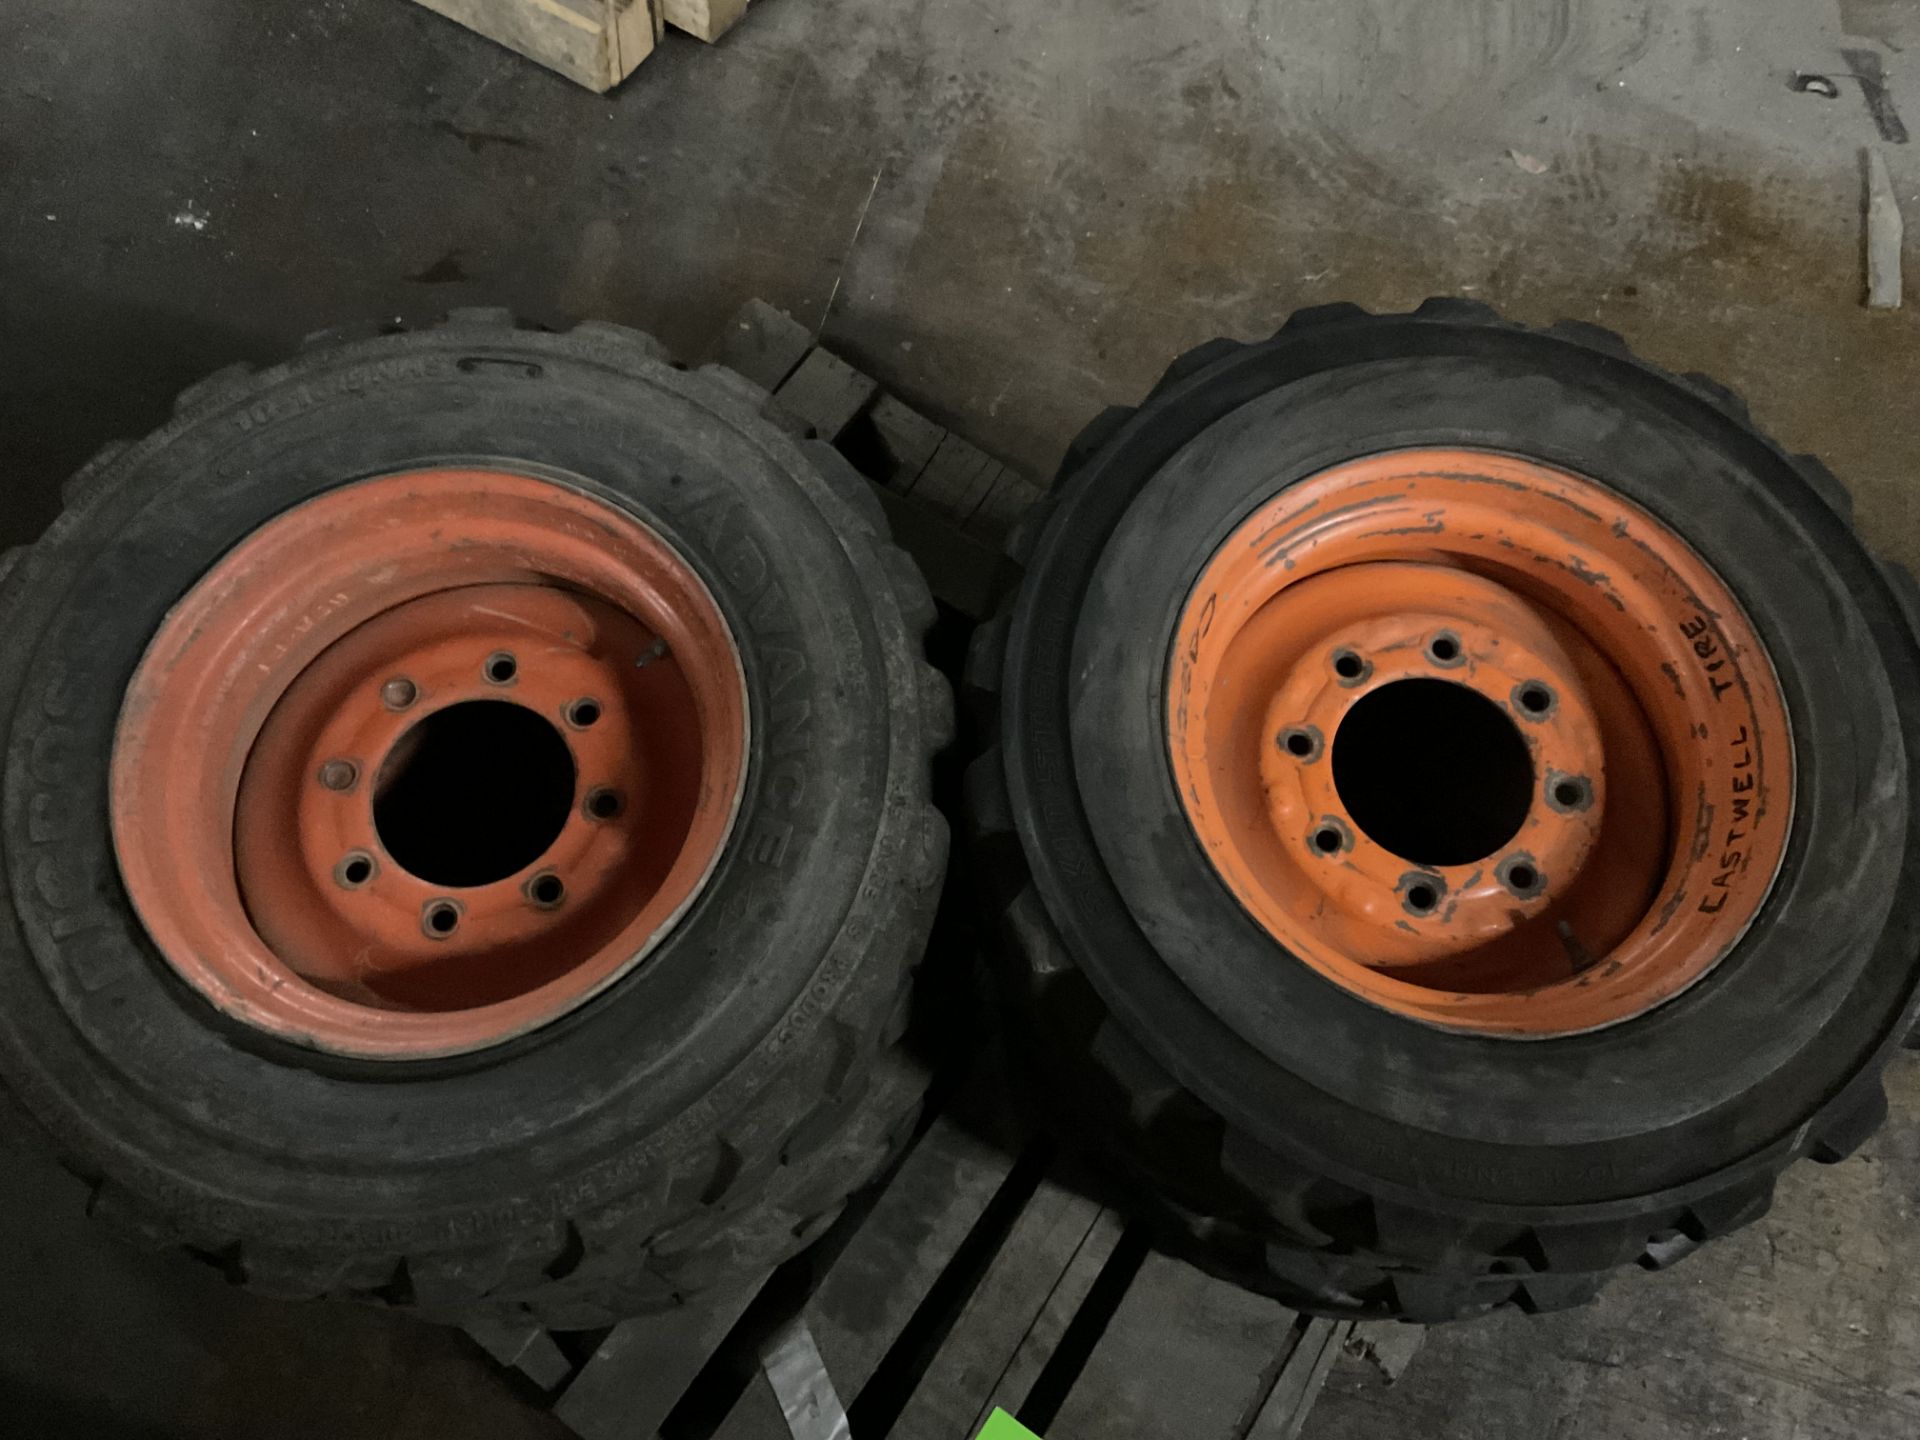 Sky Jack 4 tires 8 bolt pattern rim 8.25 tires 10-16.5HS - Image 2 of 2